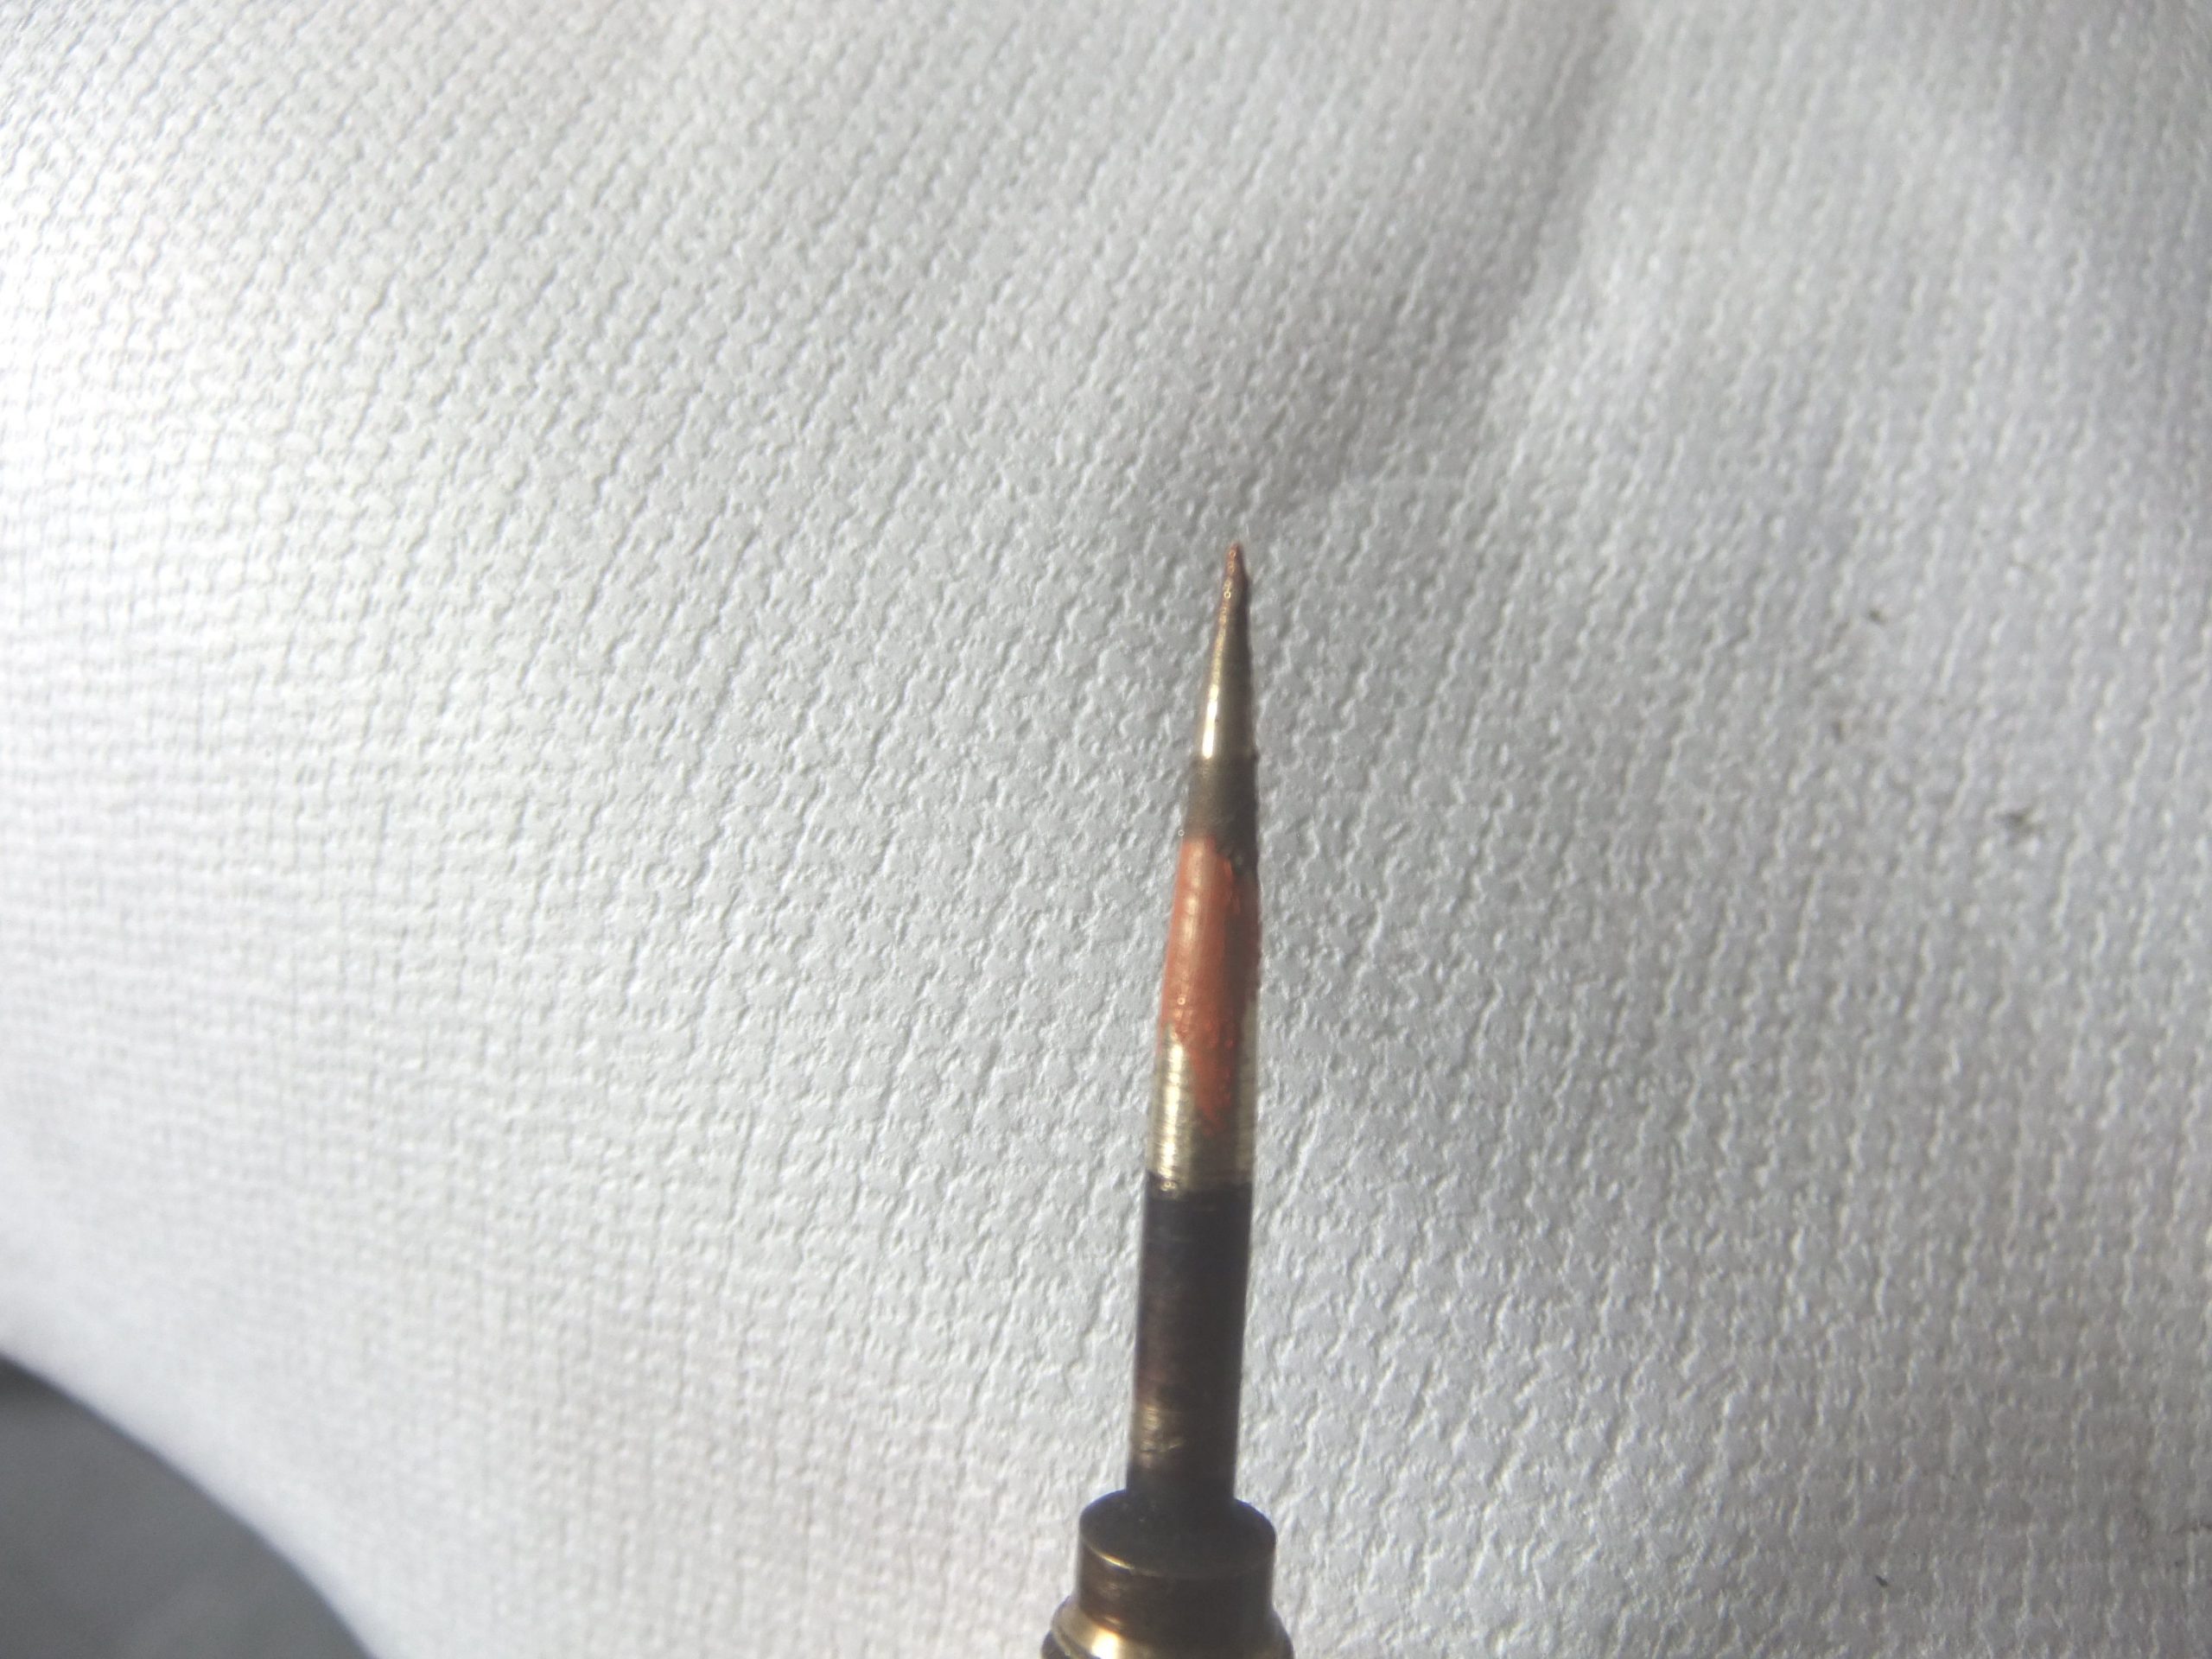 Needle valve polishing